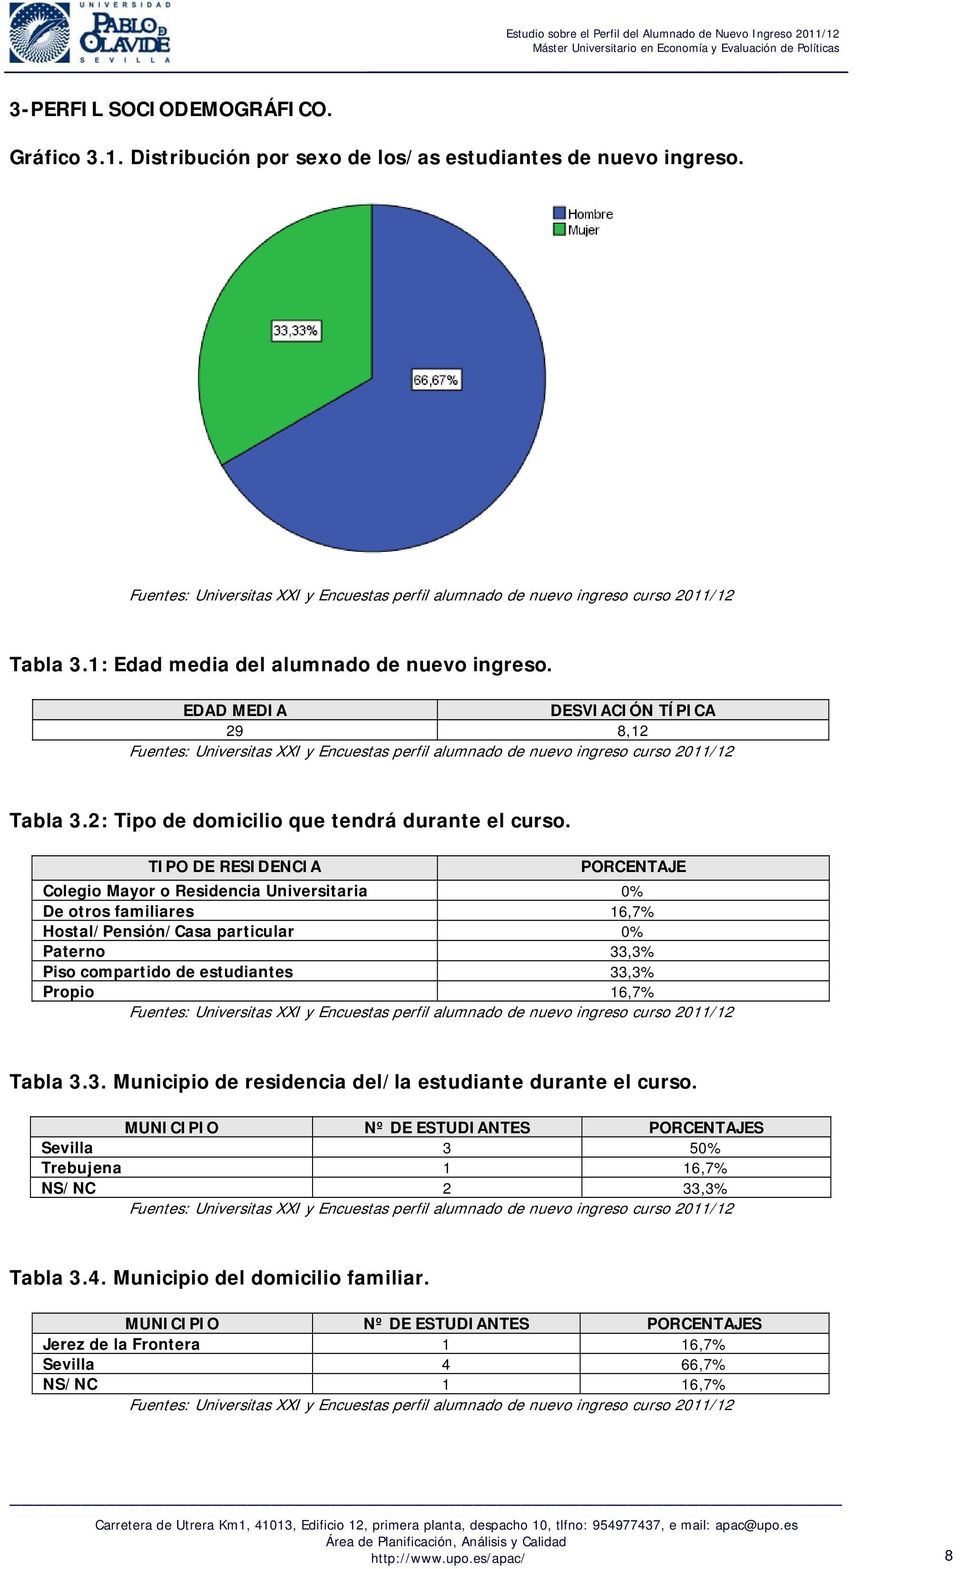 TIPO DE RESIDENCIA Colegio Mayor o Residencia Universitaria 0% De otros familiares 16,7% Hostal/Pensión/Casa particular 0% Paterno 33,3% Piso compartido de estudiantes 33,3%